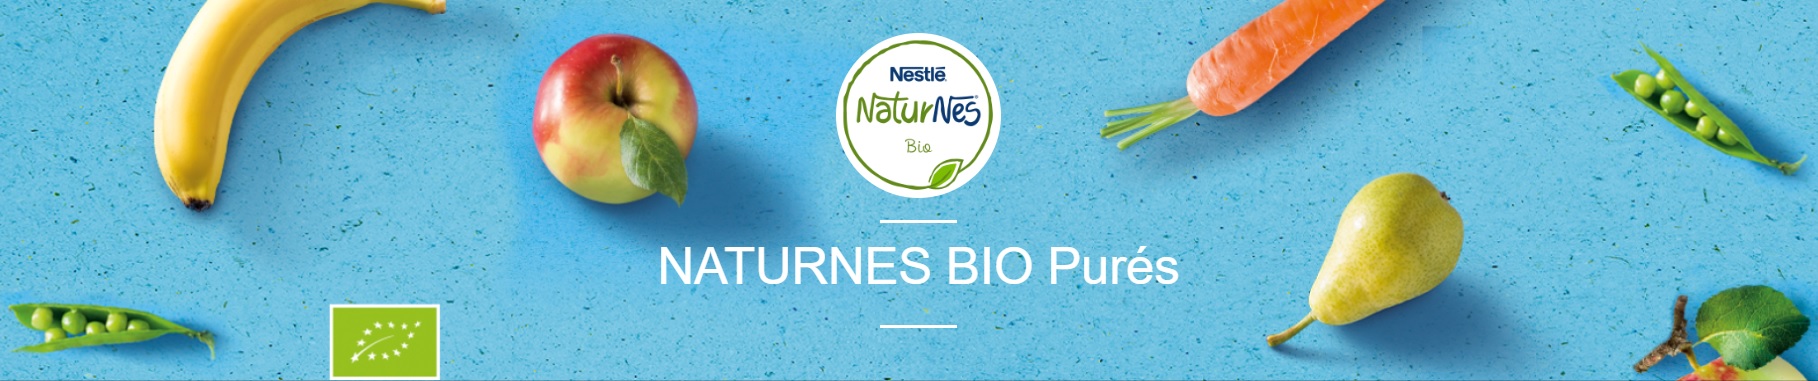 Nestlé Naturnes BIO Purés